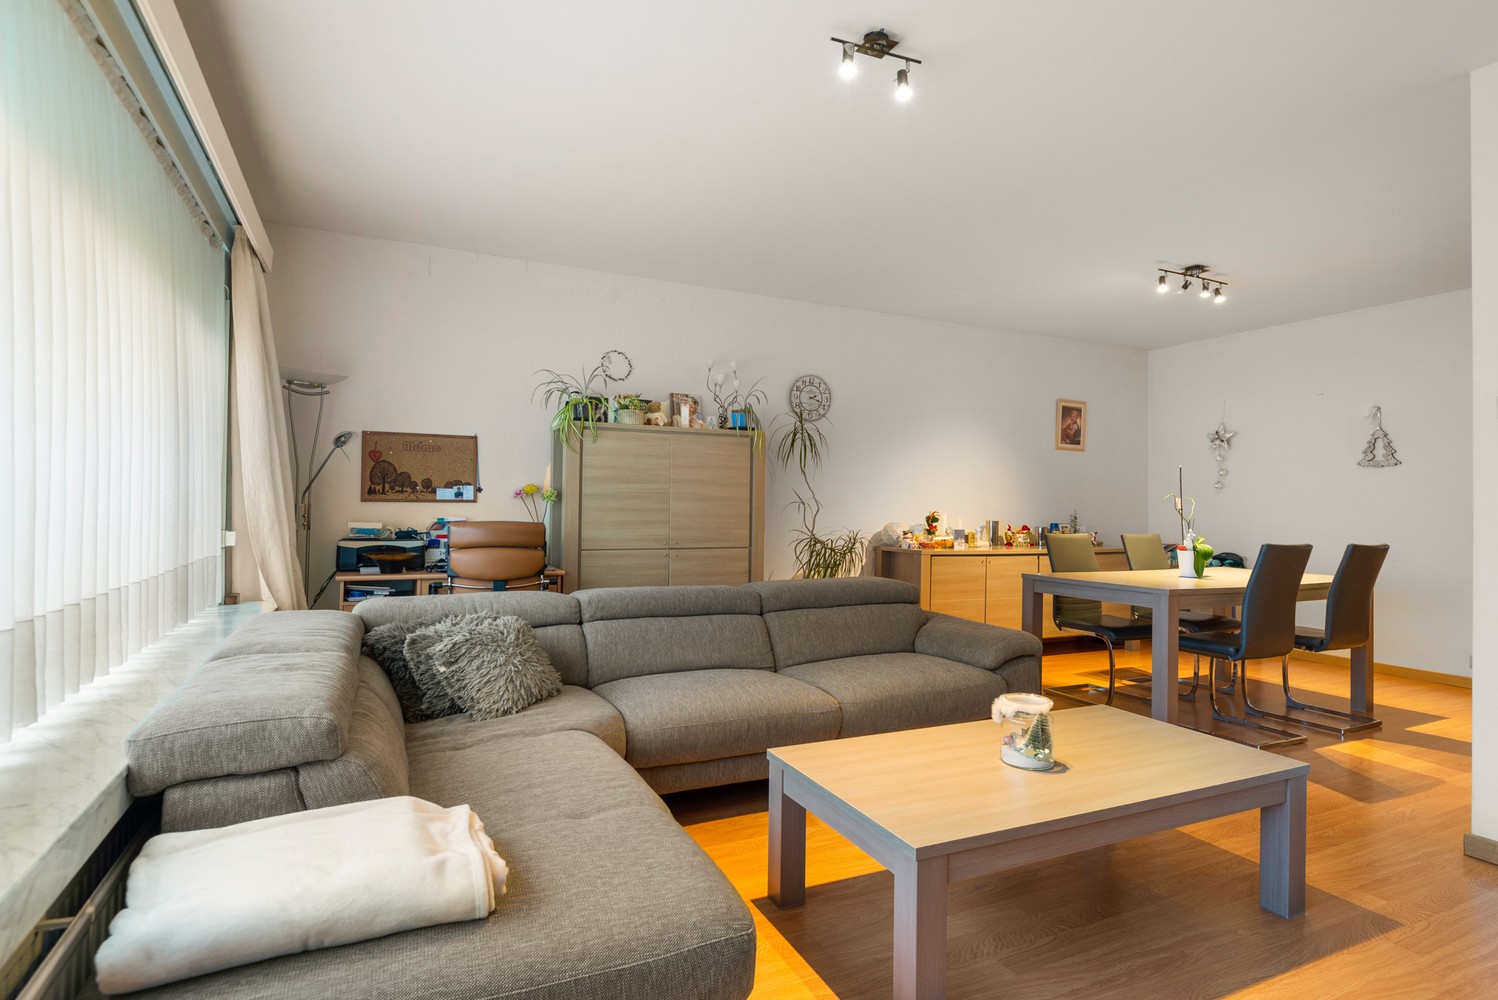 Gelijkvloers appartement met 2 slaapkamers, inclusief garage in Borsbeek! afbeelding 2